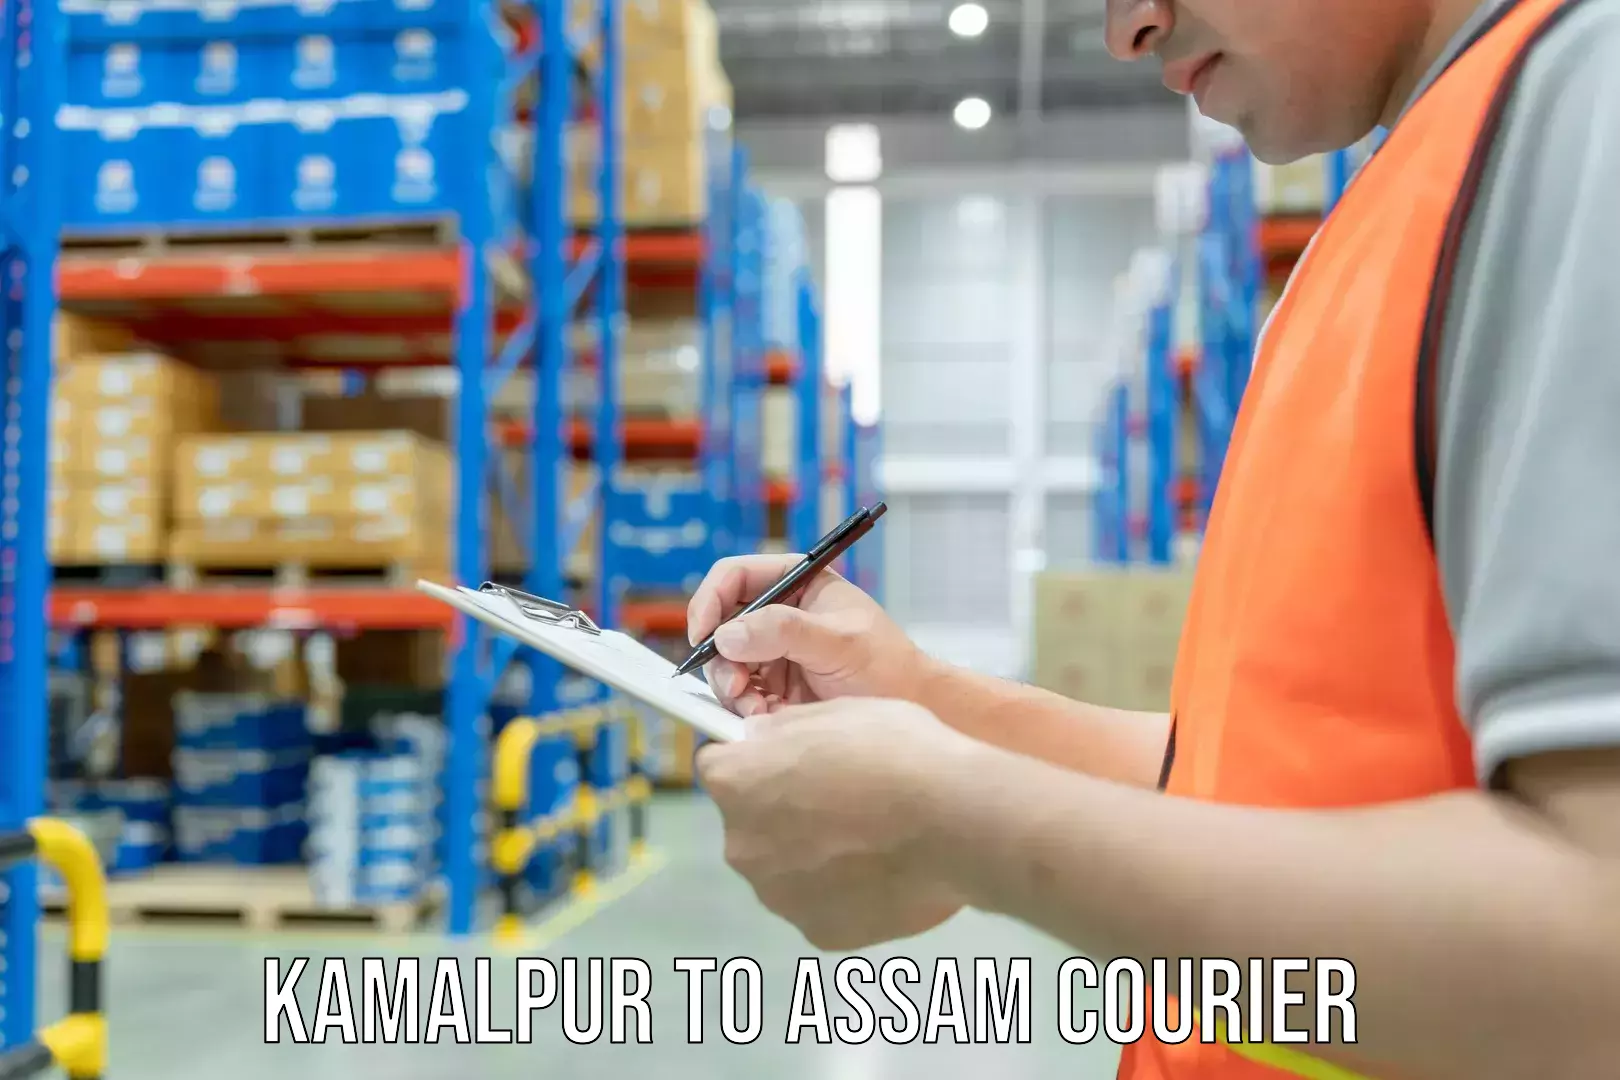 Courier service comparison Kamalpur to Assam